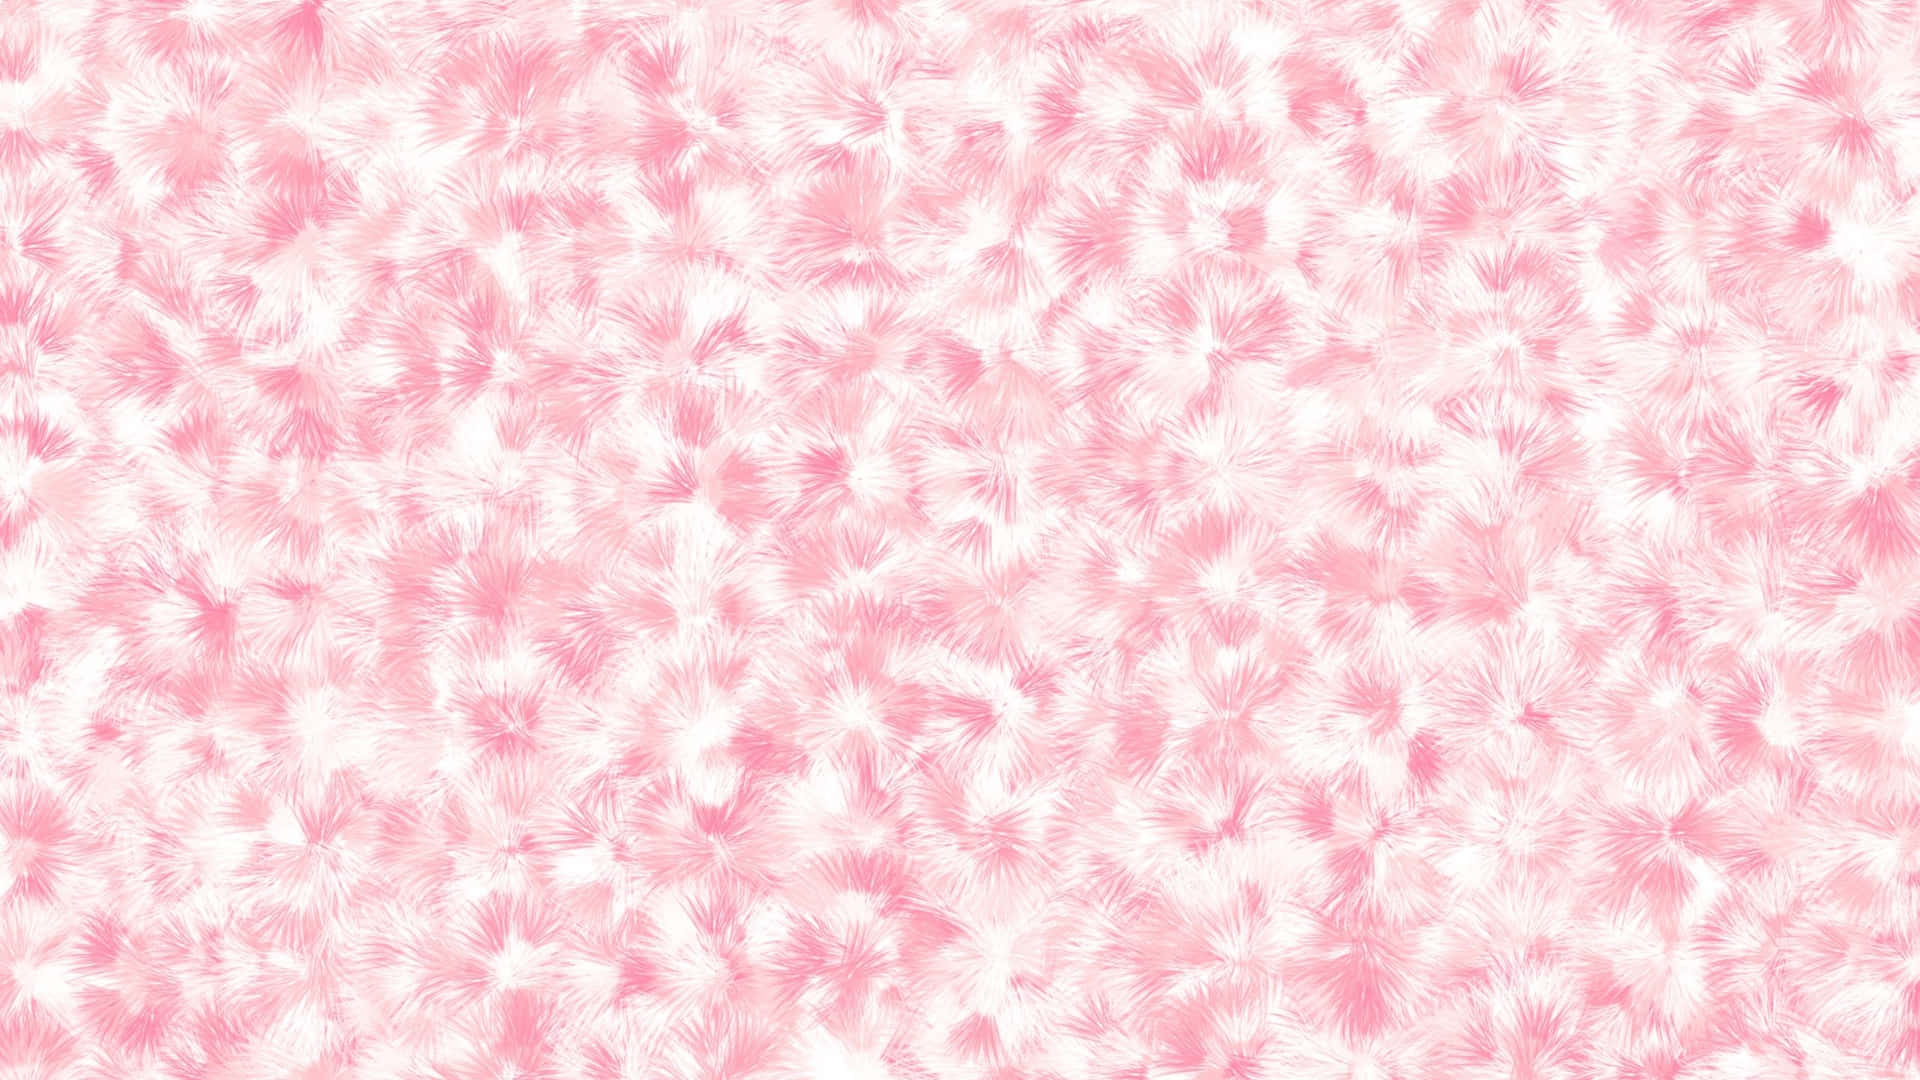 Ästhetischecomputer Hintergrundbilder Mit Leichten, Rosafarbenen Feder-mustern. Wallpaper